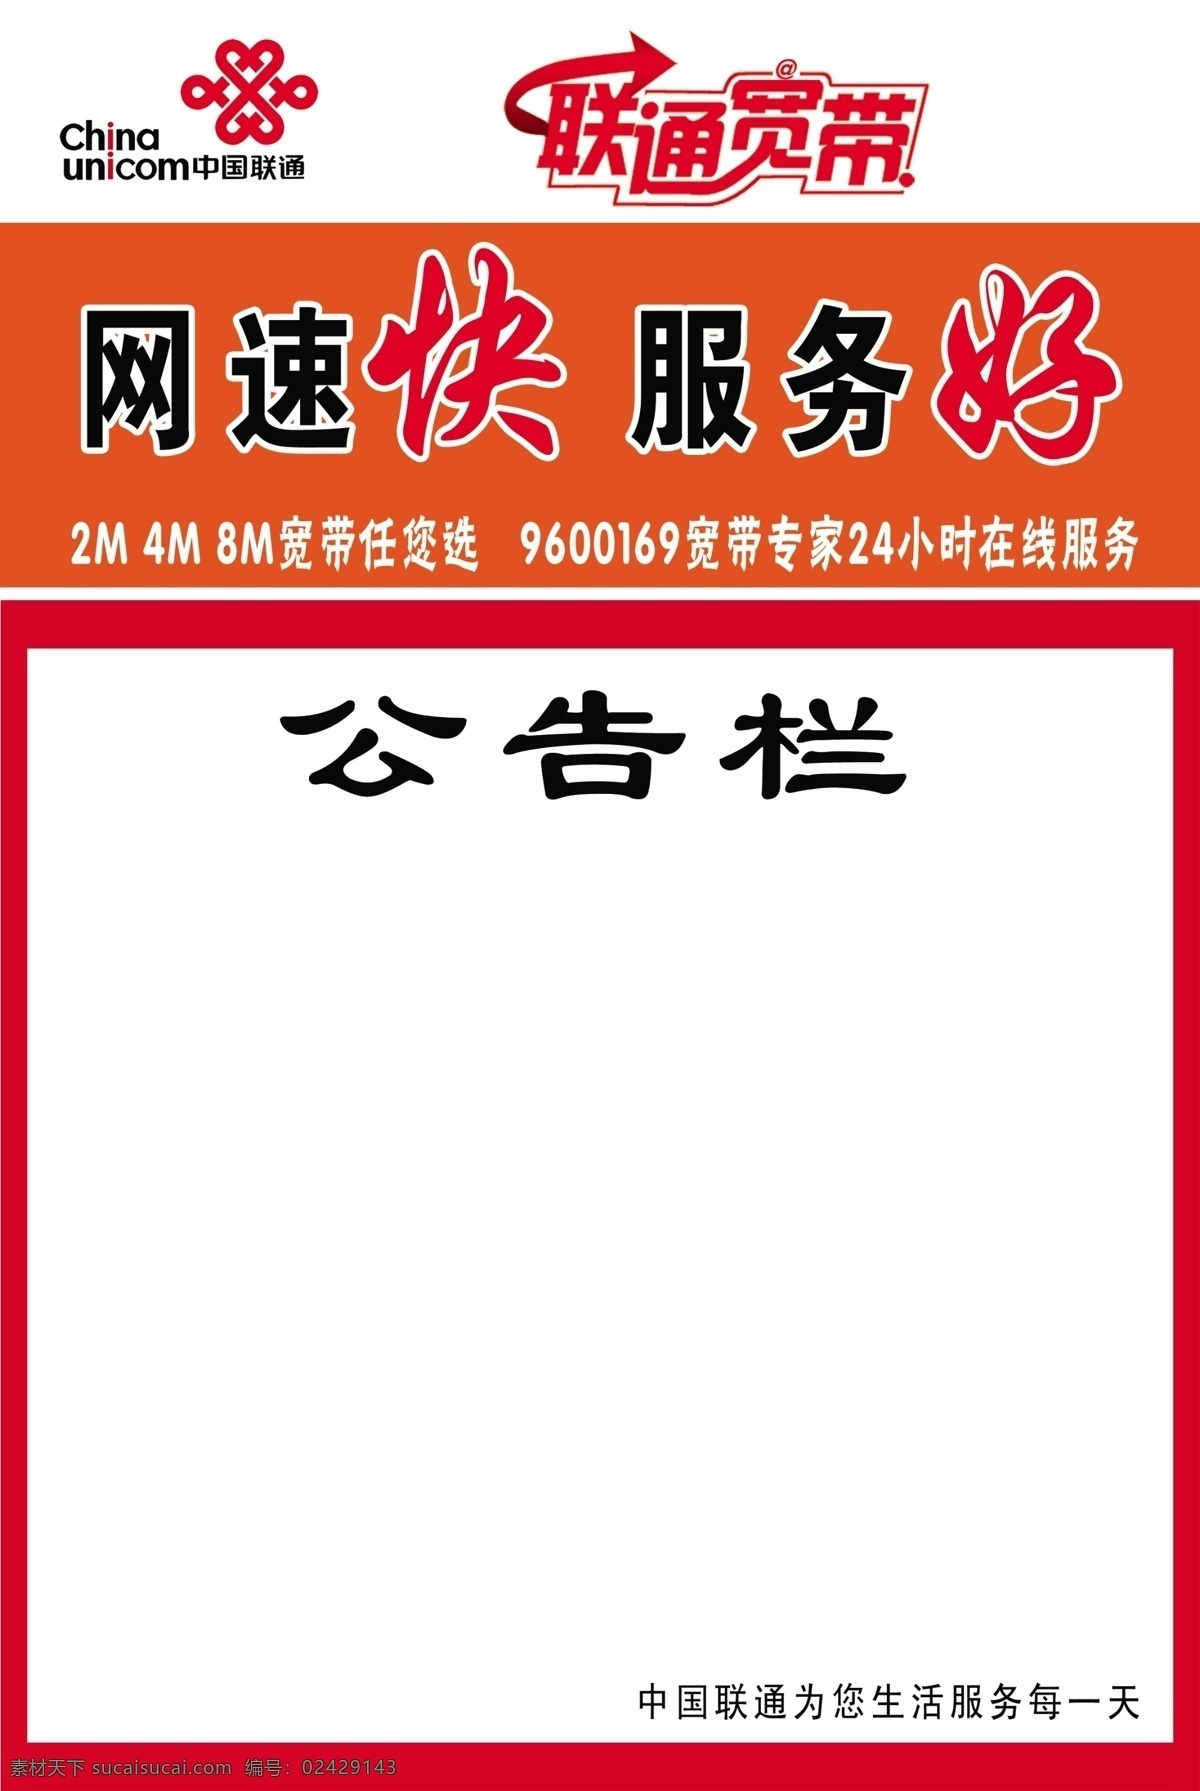 中国联通 公告栏 联通标 联通宽带 小区牌 广告设计模板 源文件